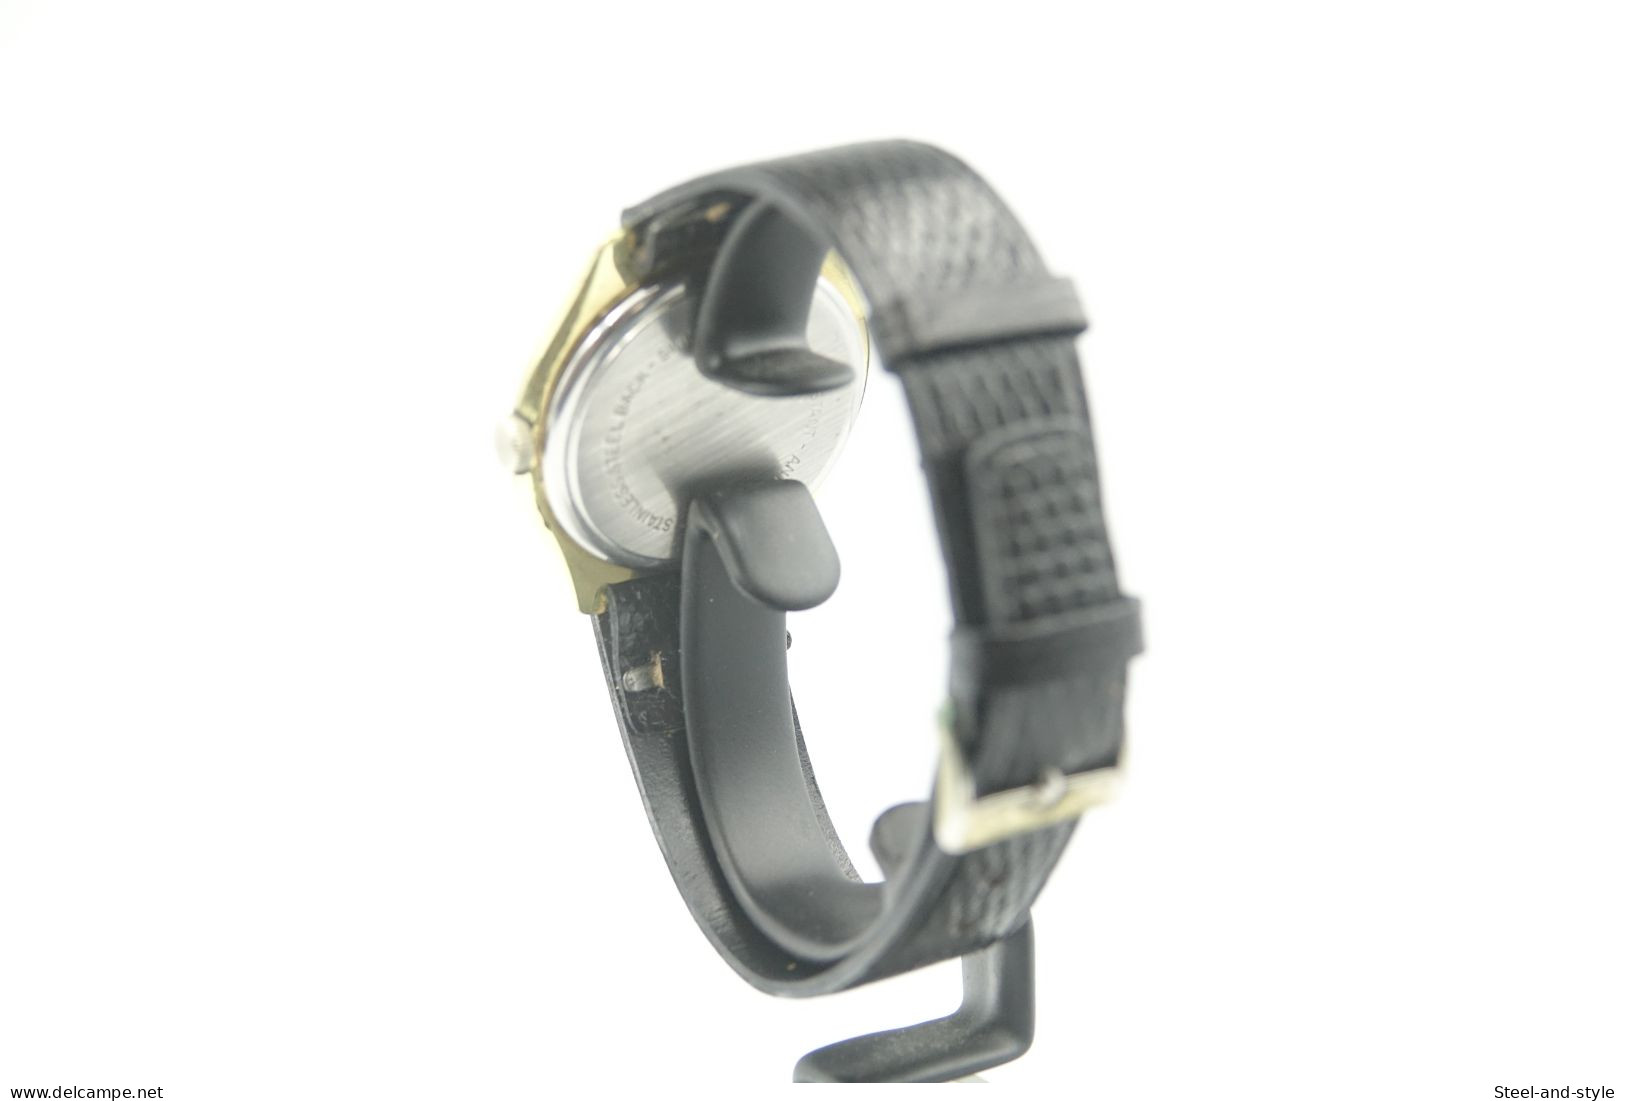 Watches : VERDAL 17 JEWELS INCABLOC HANDWIND - Original - Running - 1960s - Horloge: Luxe